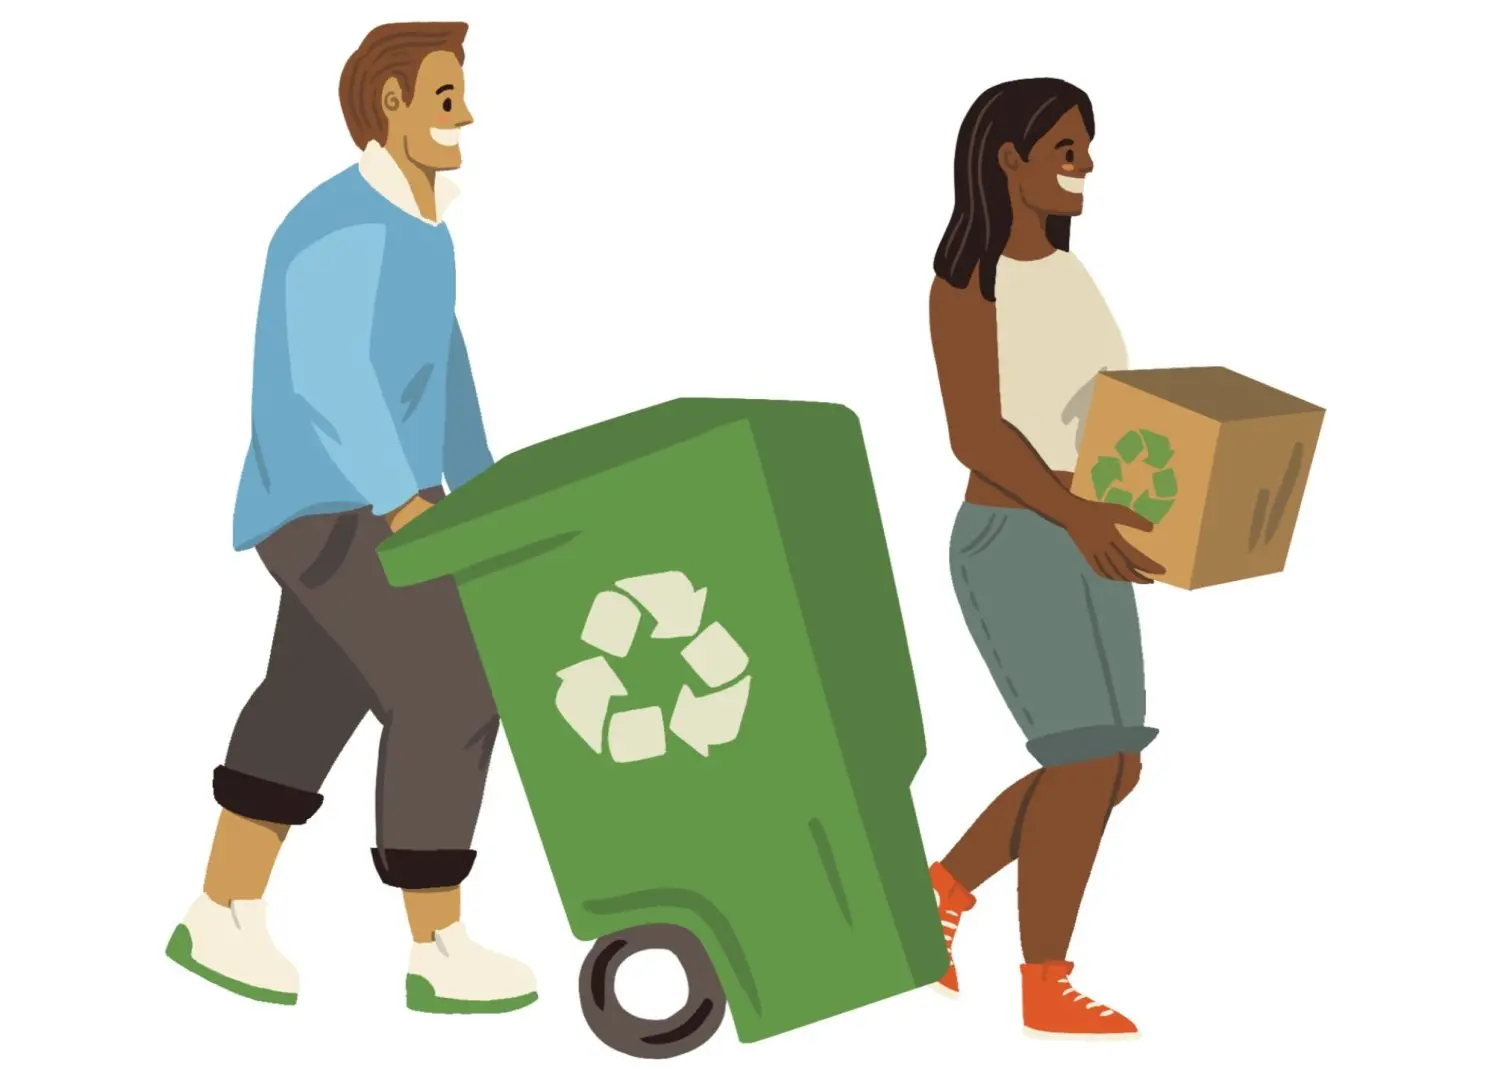 Pictogramme d'un homme qui pousse une poubelle et femme qui tient un carton